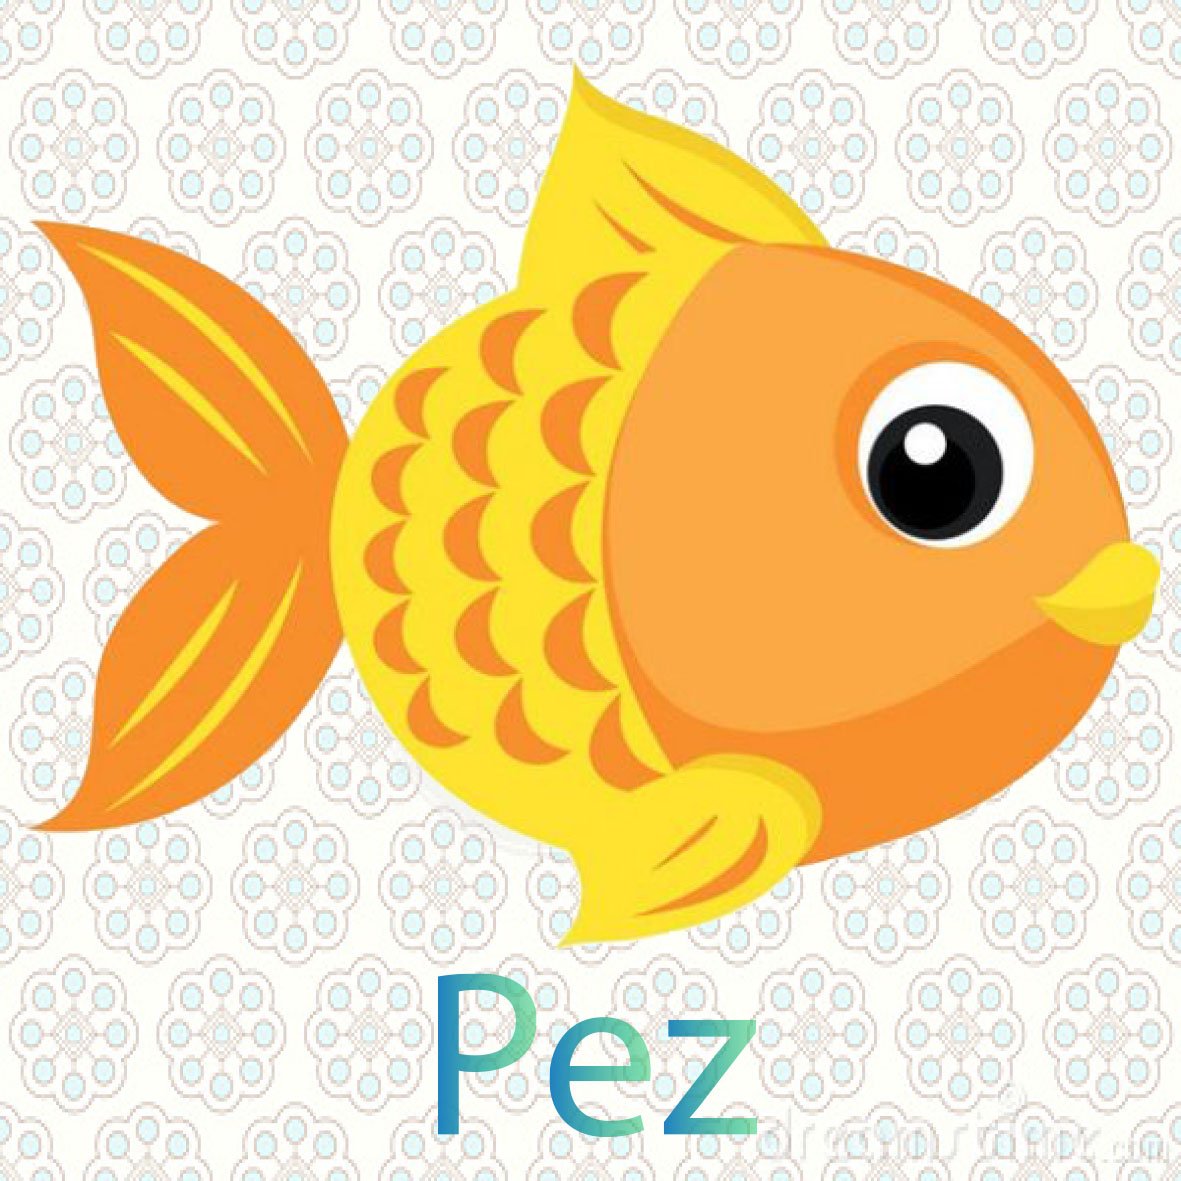  imagen de una Pez, tiene dos aletas y una cola, viven en el agua y rspiran por medio de branquias 